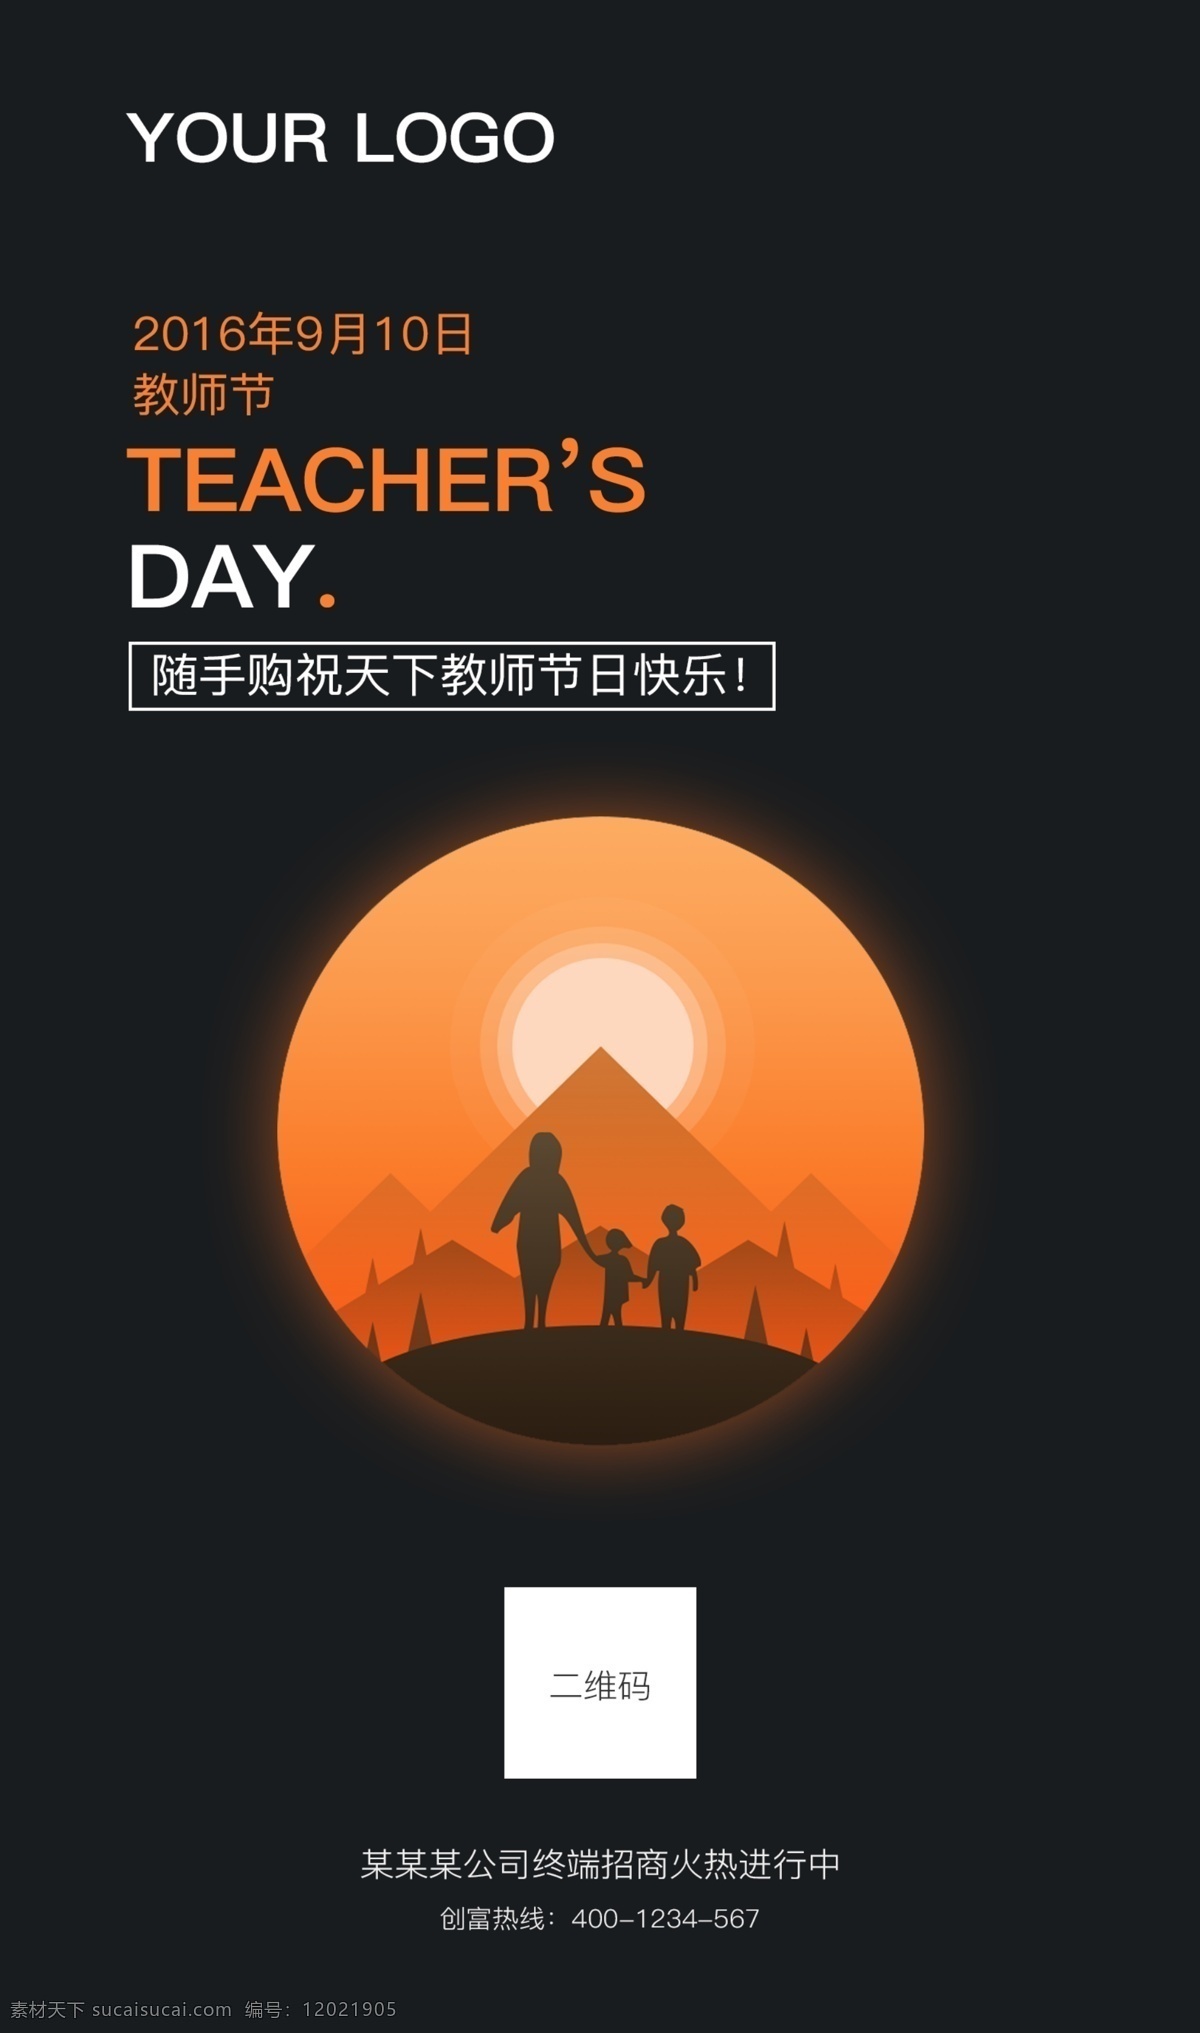 微 信 教师节 启动 页面 app 微信教师节 老师辛苦了 启动页面